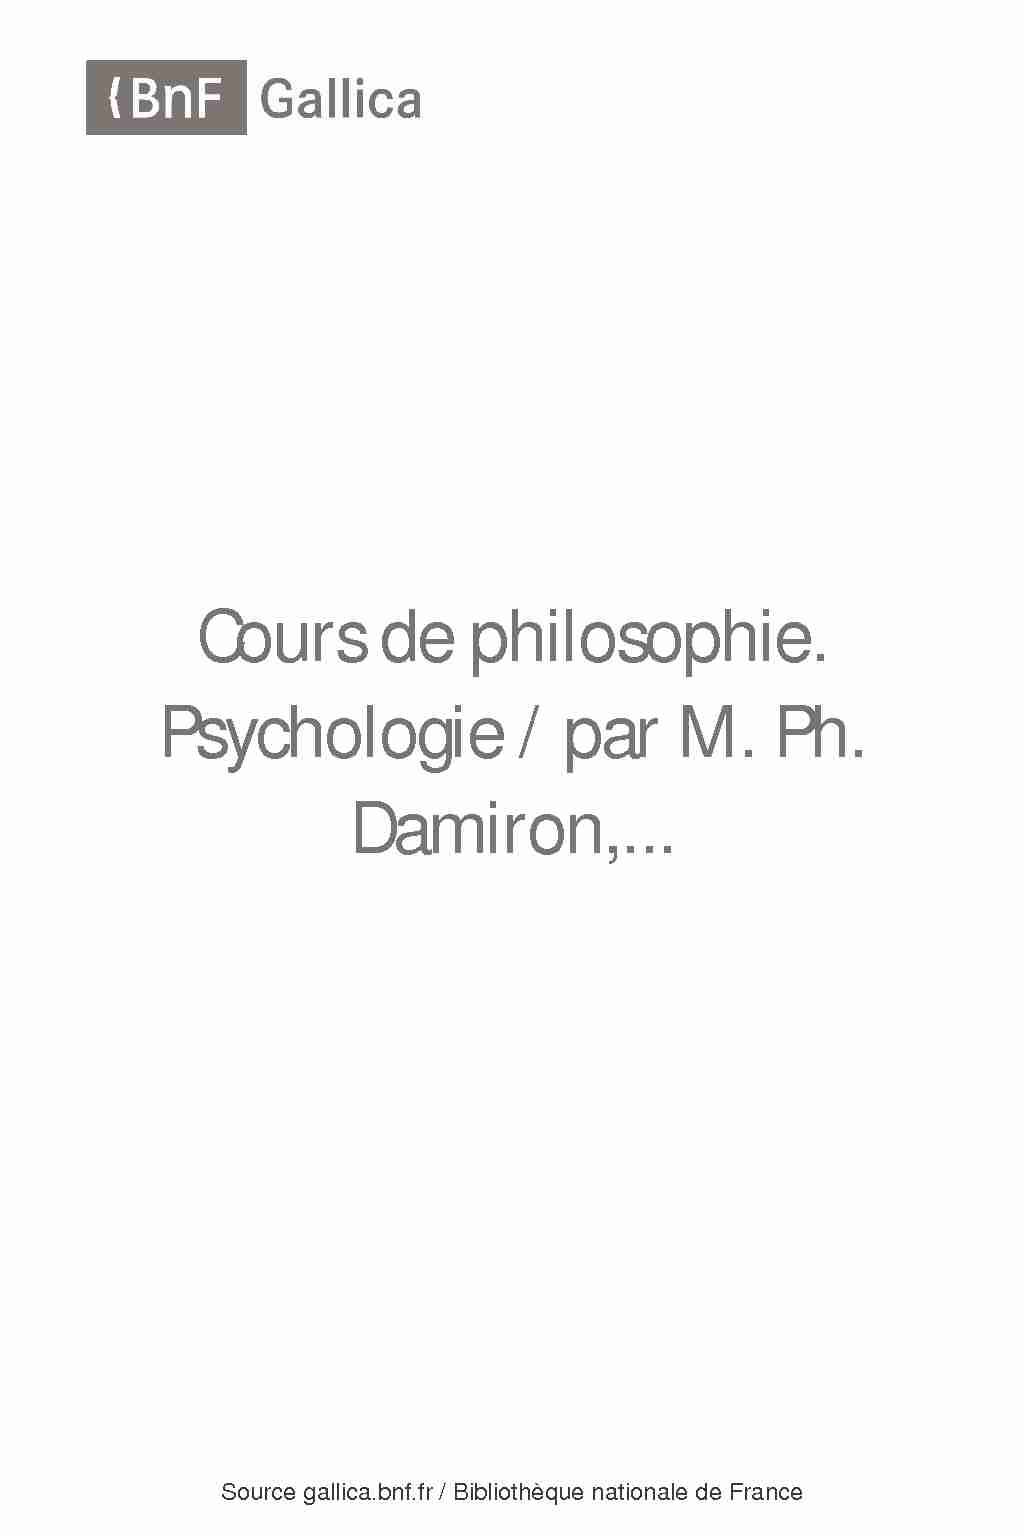 [PDF] Cours de philosophie / par M Ph Damiron - Gallica